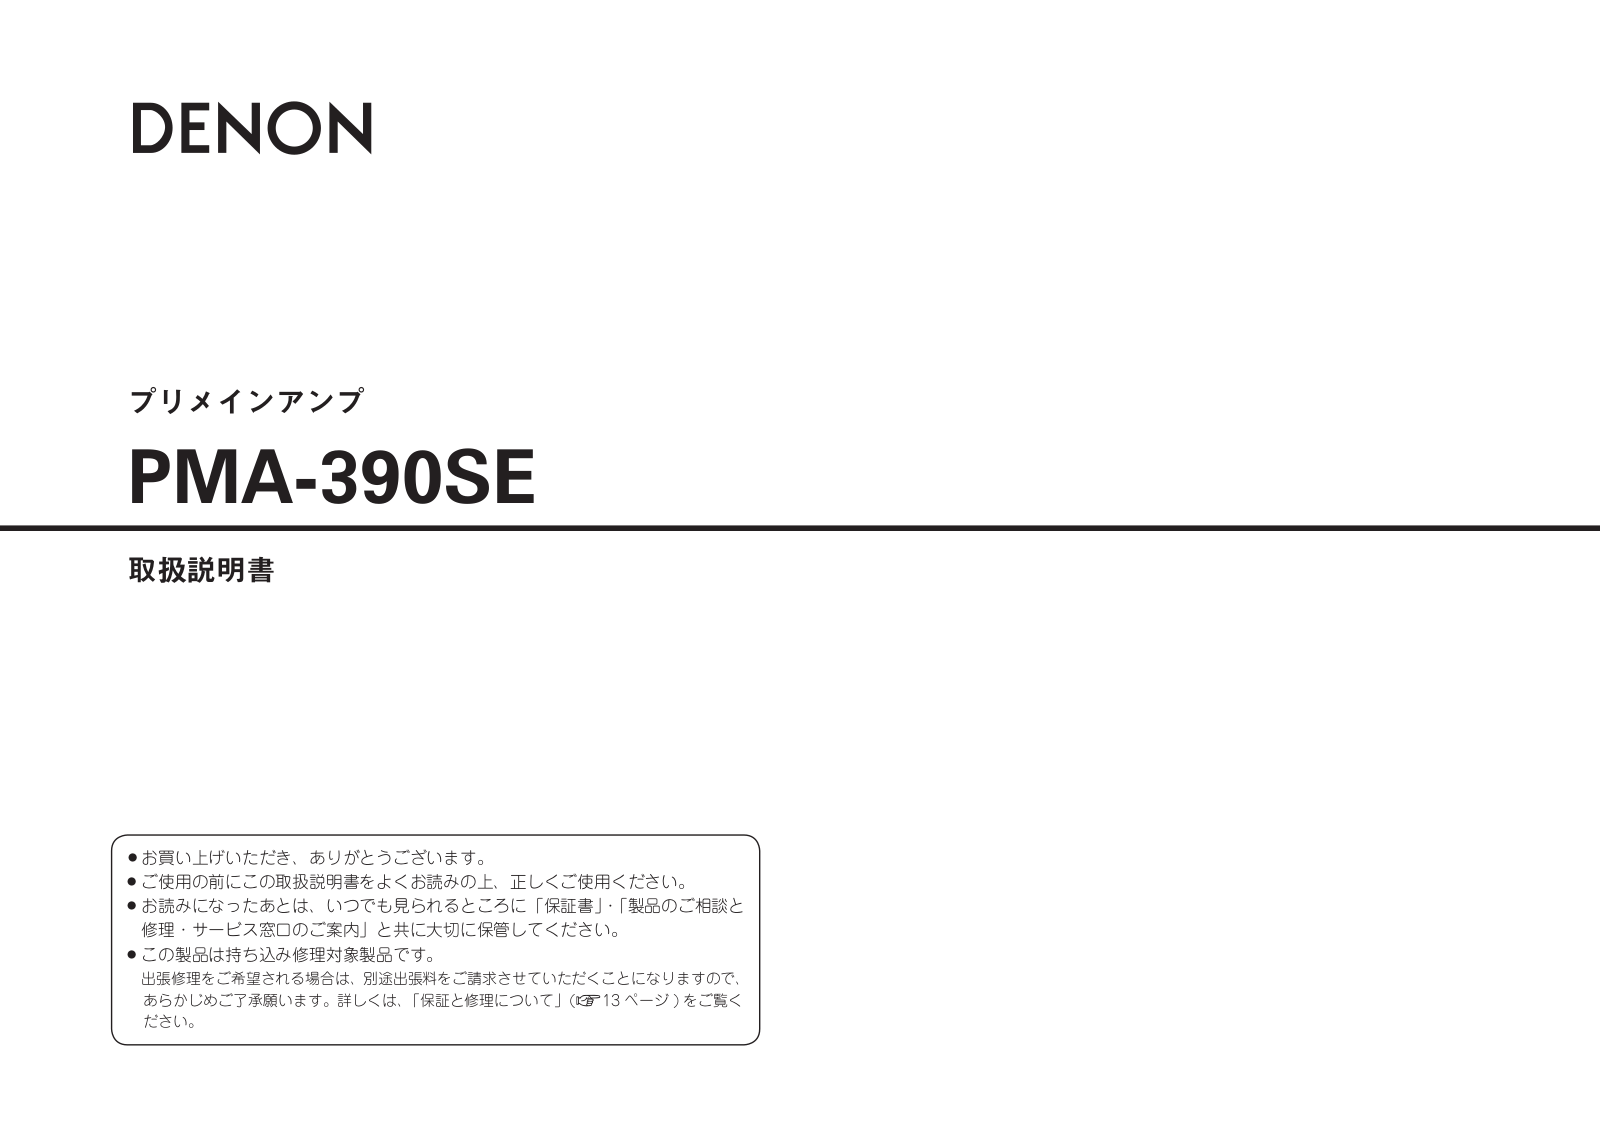 Denon PMA-390SE Owner's Manual